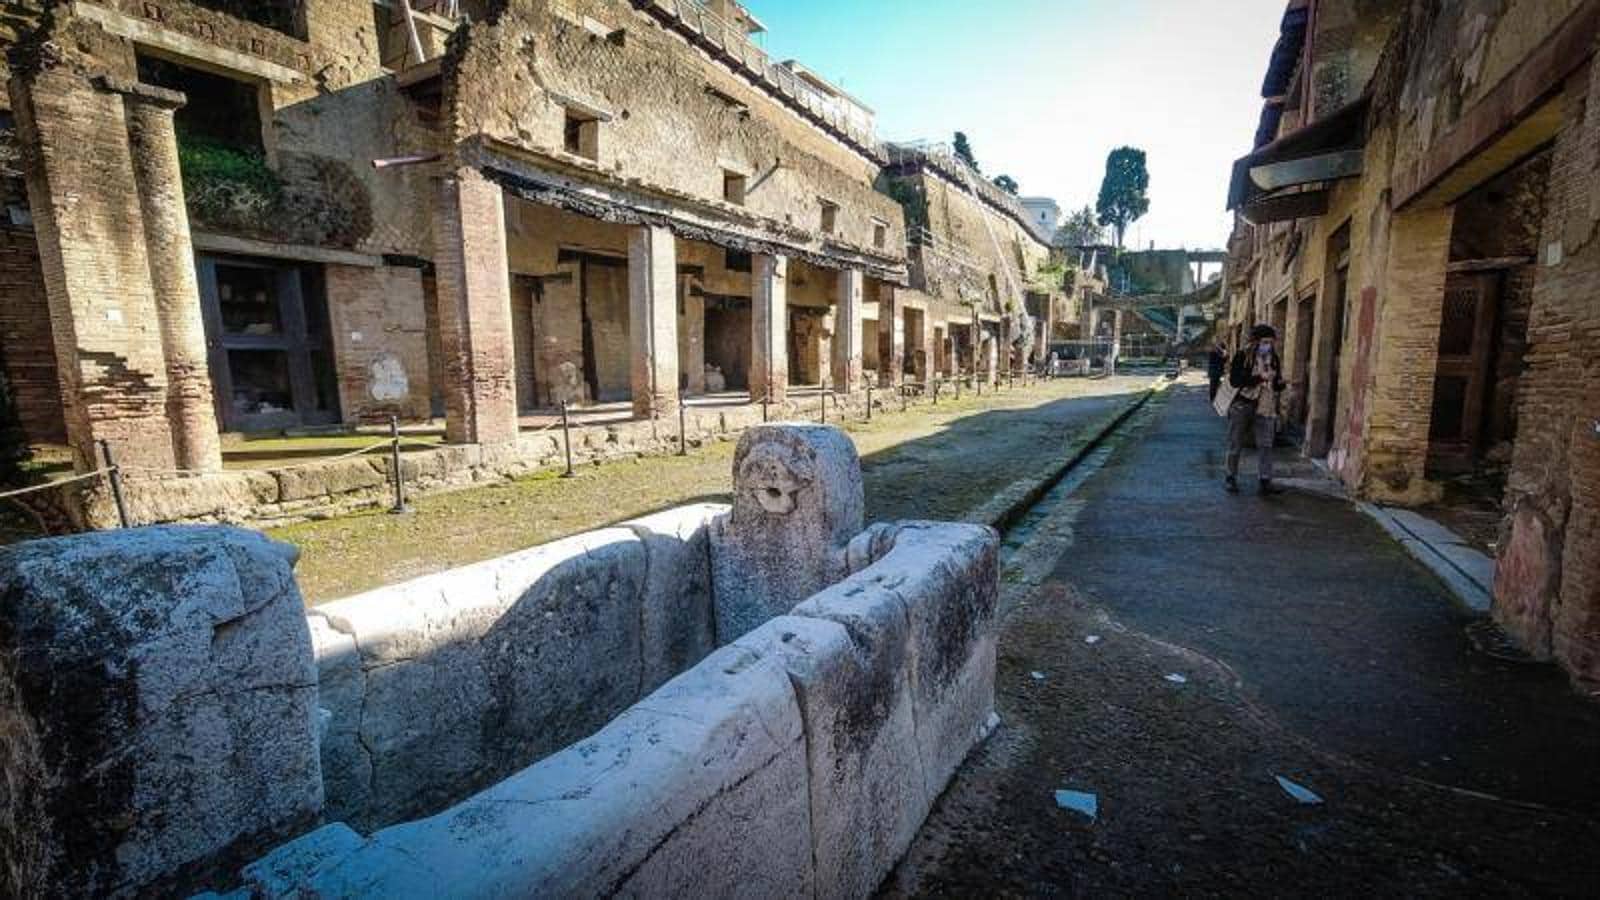 Siguen fascinando. Pompeya y Herculano, donde se mantienen intactas calles, edificios y restos de personas que se vieron sorprendidas por la erupción del Vesubio, son una fuente de fascinación tanto para los arqueólogos como para los turistas  